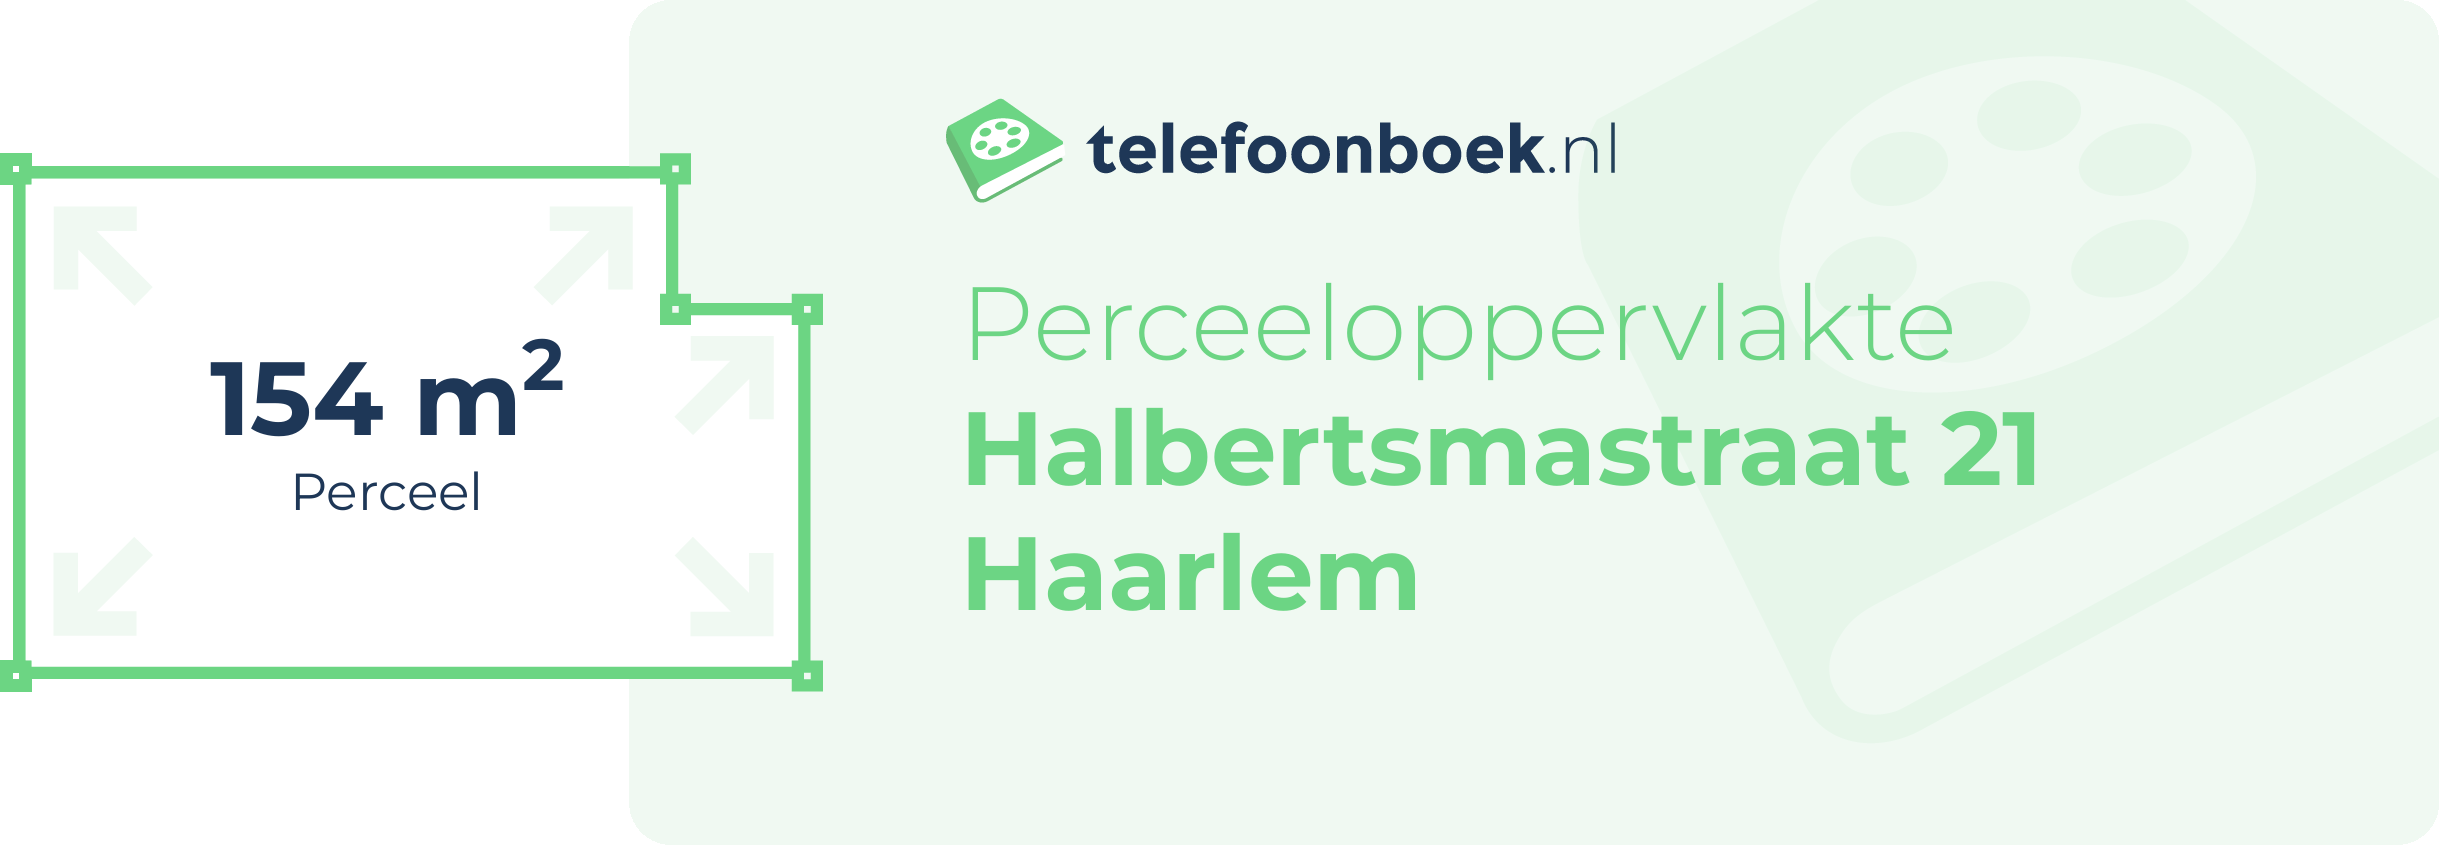 Perceeloppervlakte Halbertsmastraat 21 Haarlem